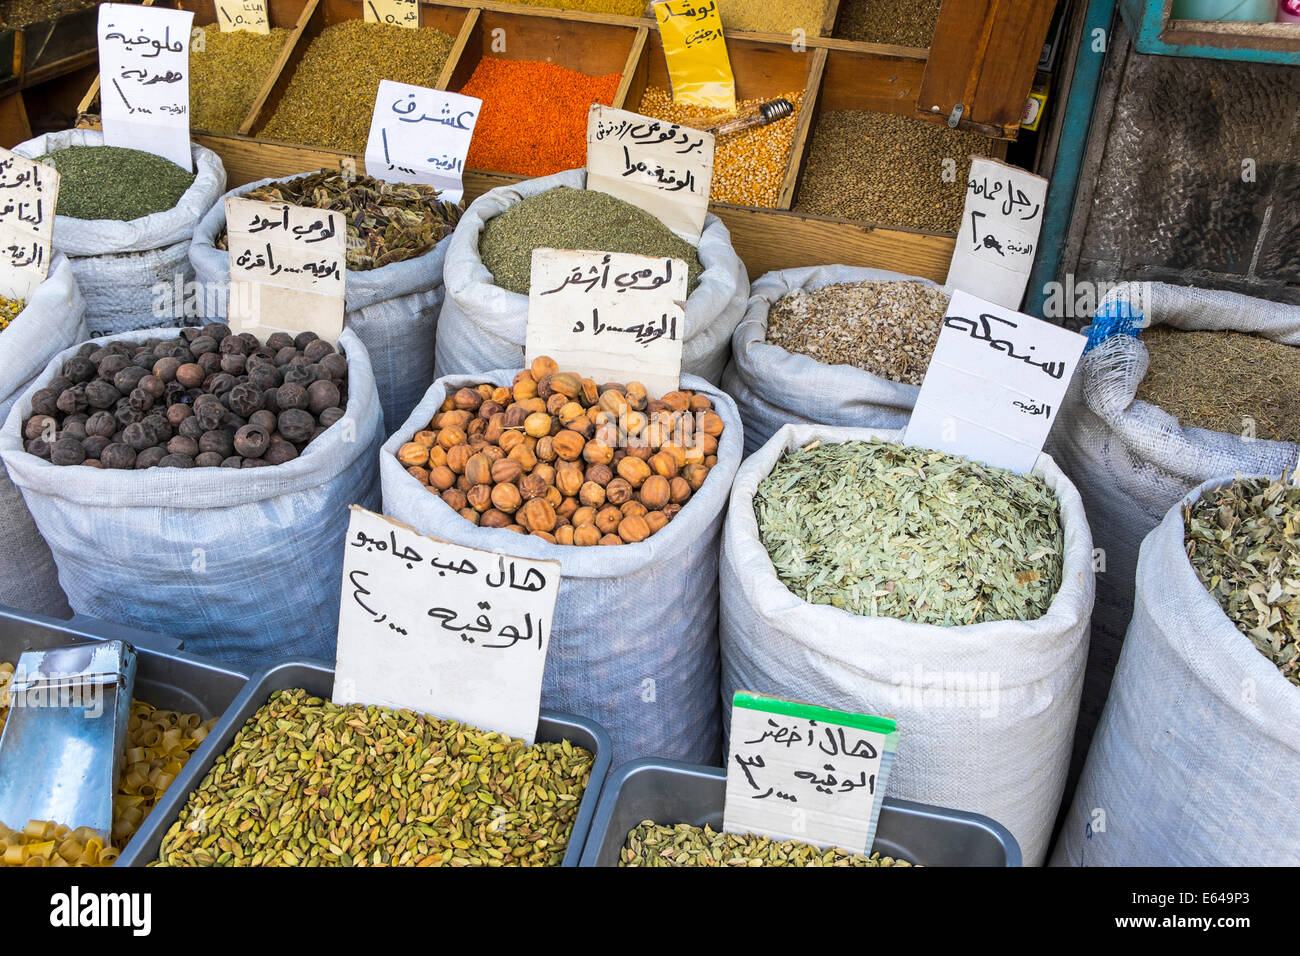 Herbs, pulses & spices in market, Amman, Jordan Stock Photo